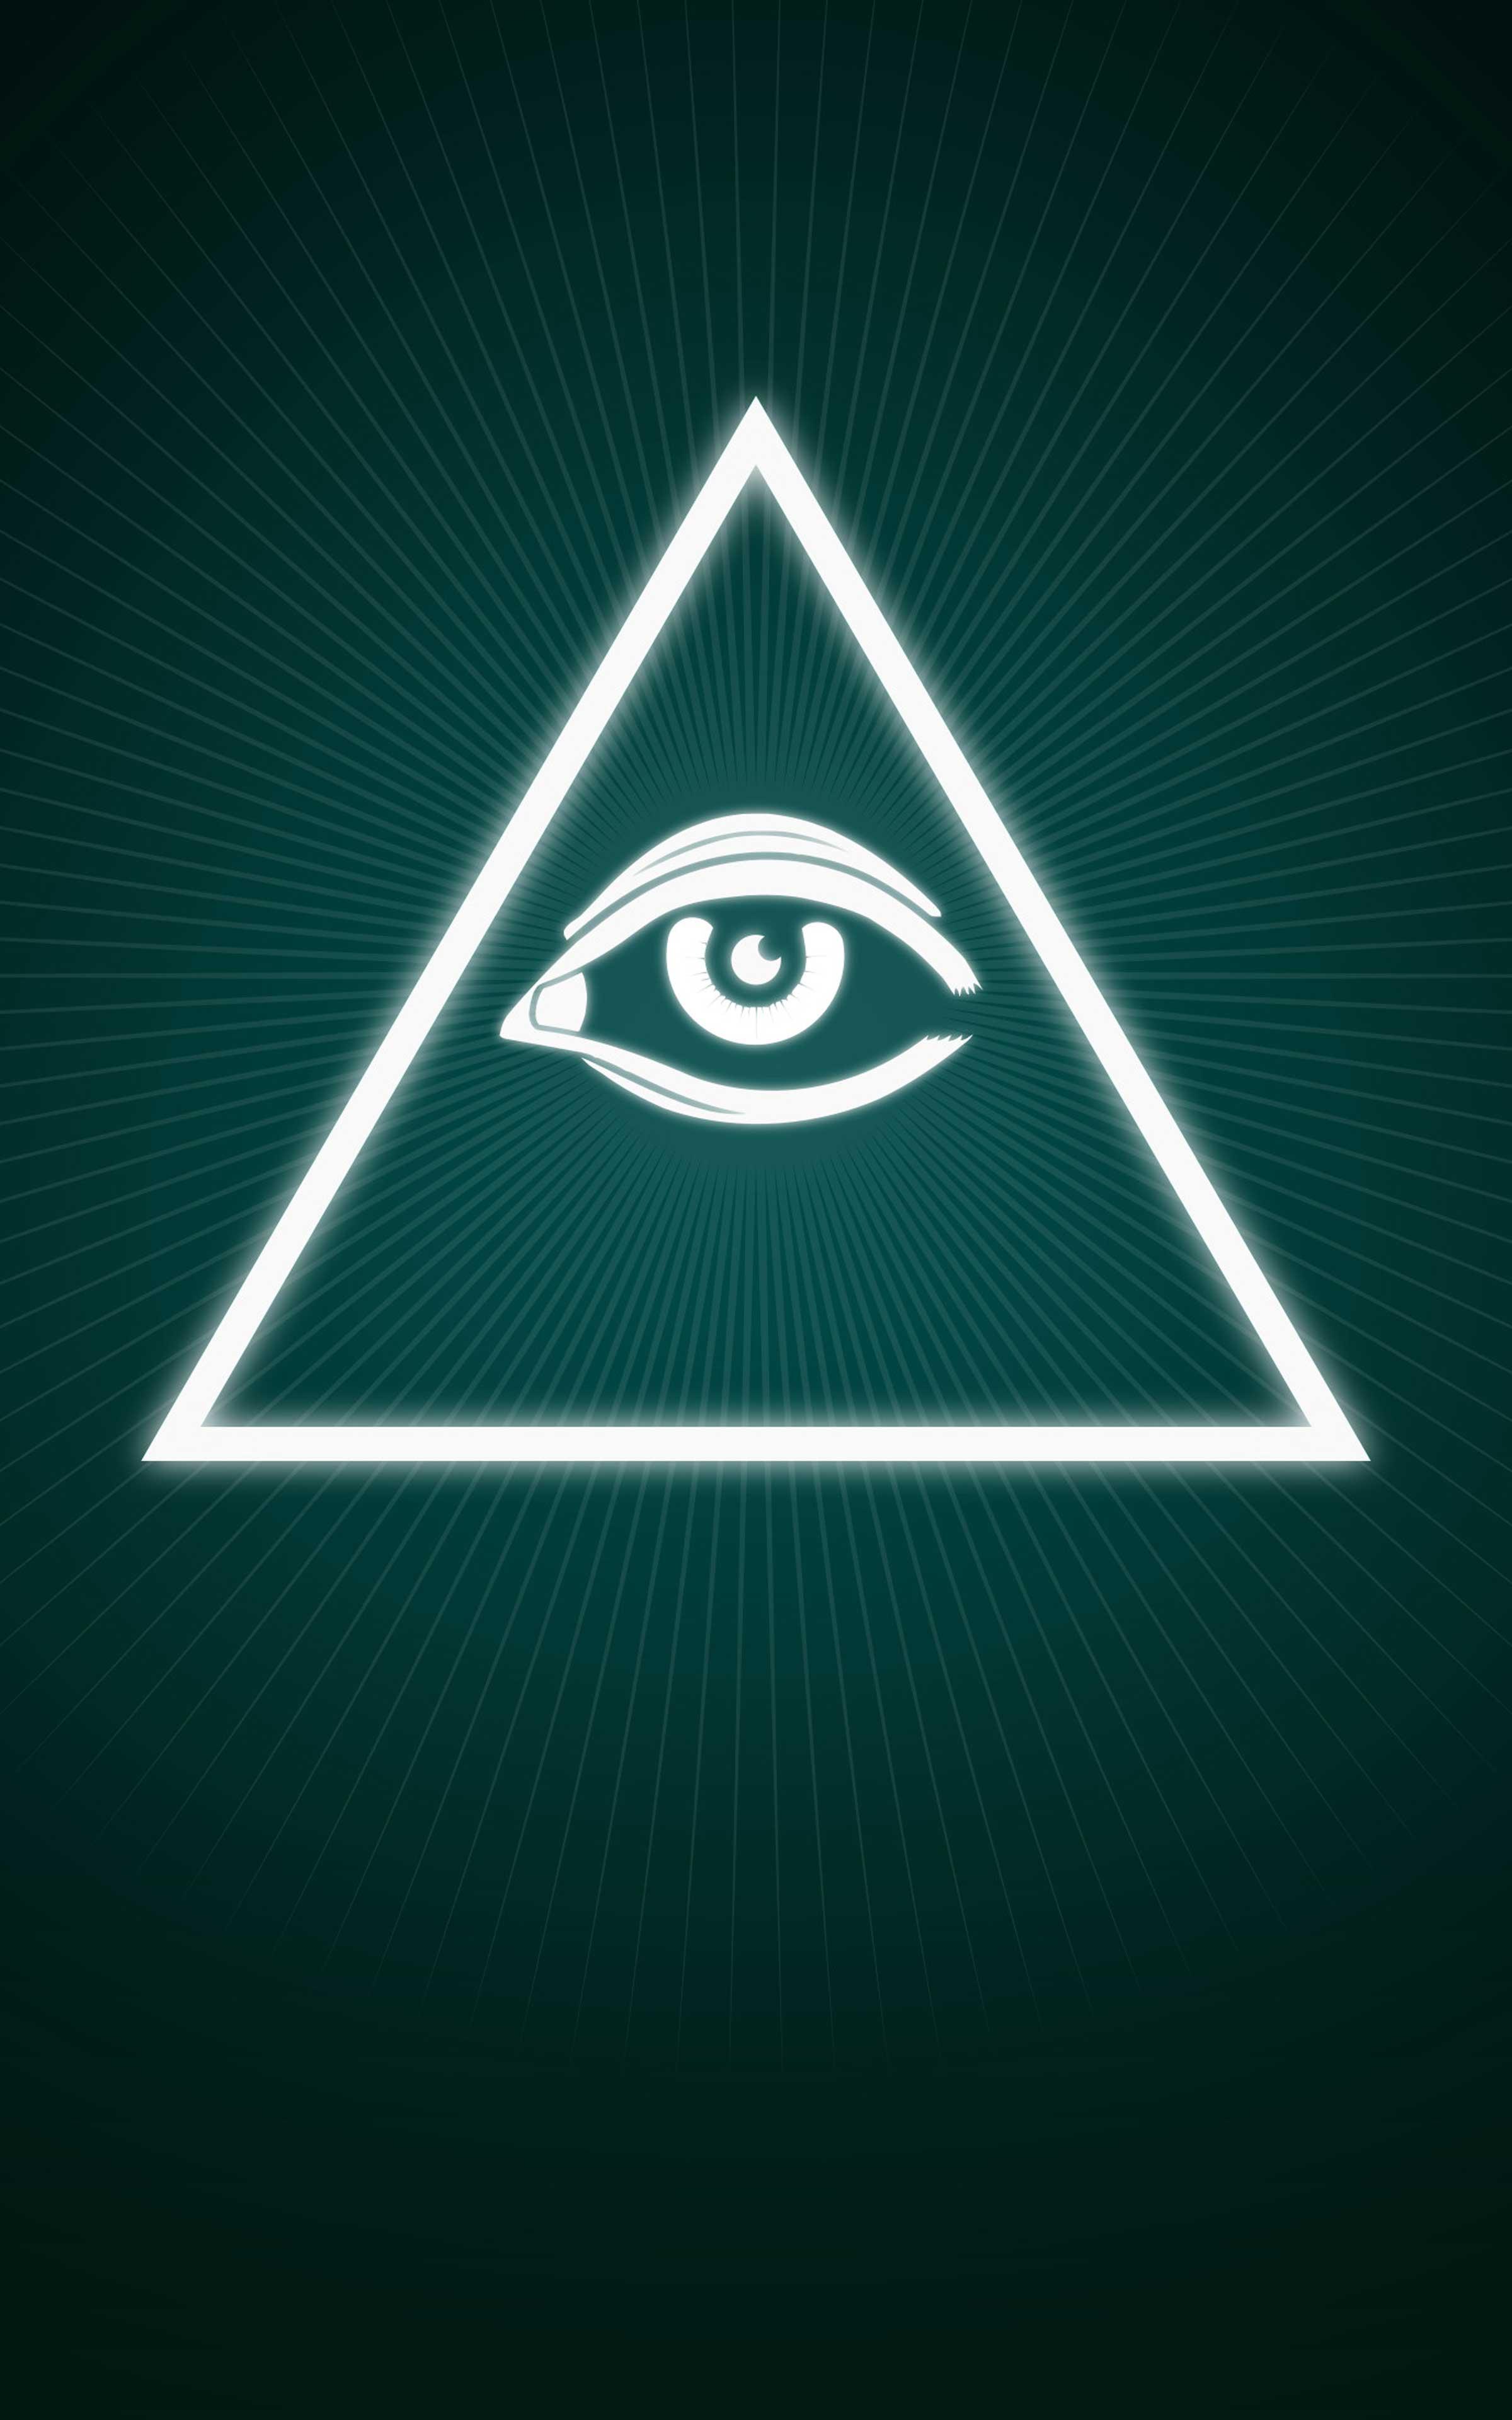 fond d'écran illuminati,vert,triangle,police de caractère,illustration,triangle